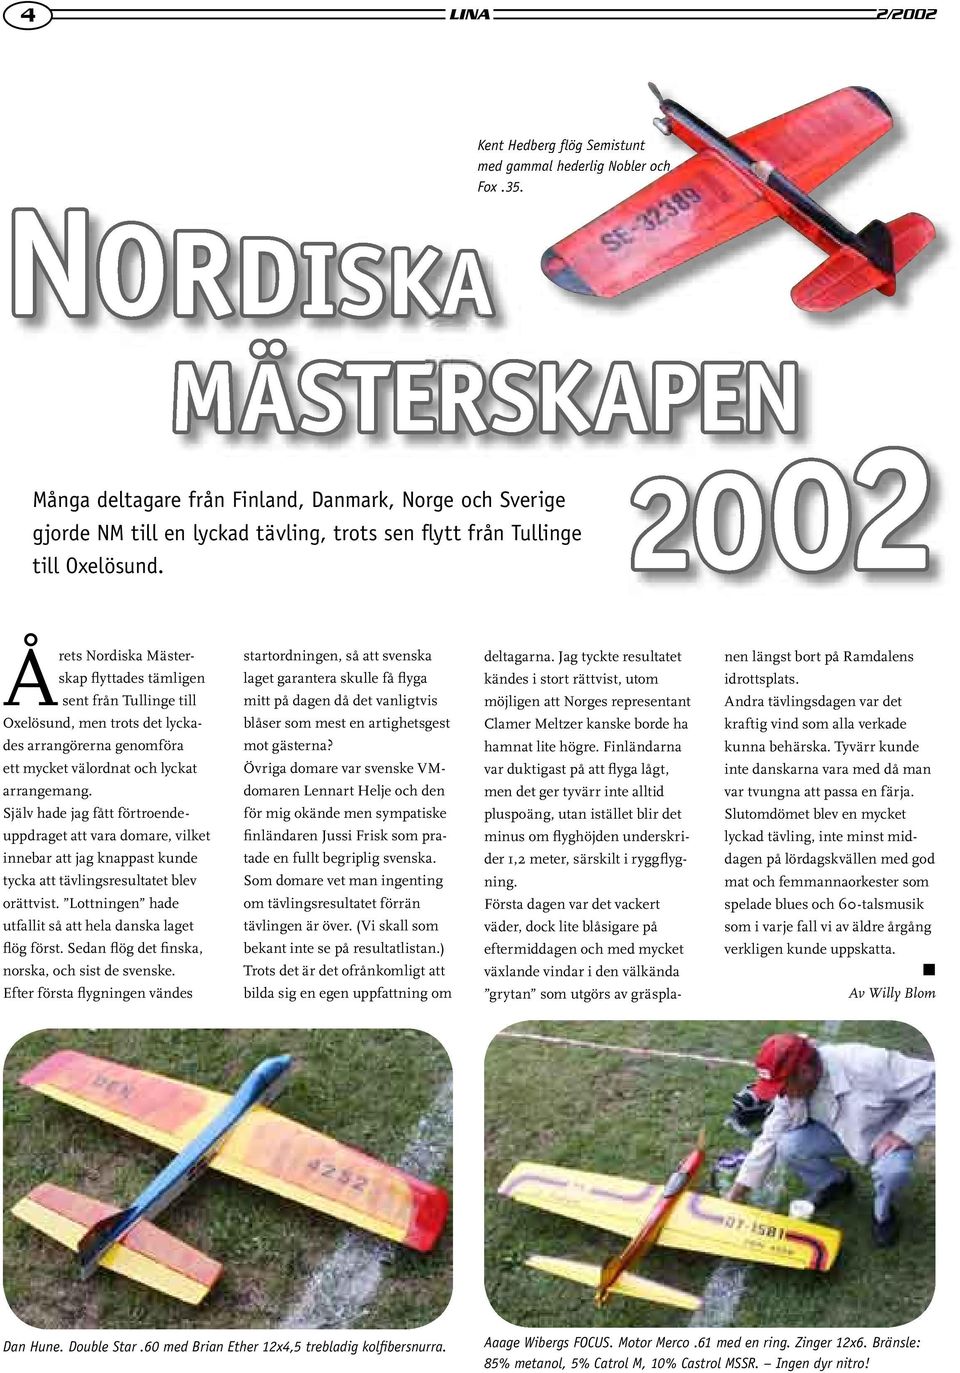 MÄSTERSKAPEN 2002 Årets Nordiska Mästerskap flyttades tämligen sent från Tullinge till Oxelösund, men trots det lyckades arrangörerna genomföra ett mycket välordnat och lyckat arrangemang.